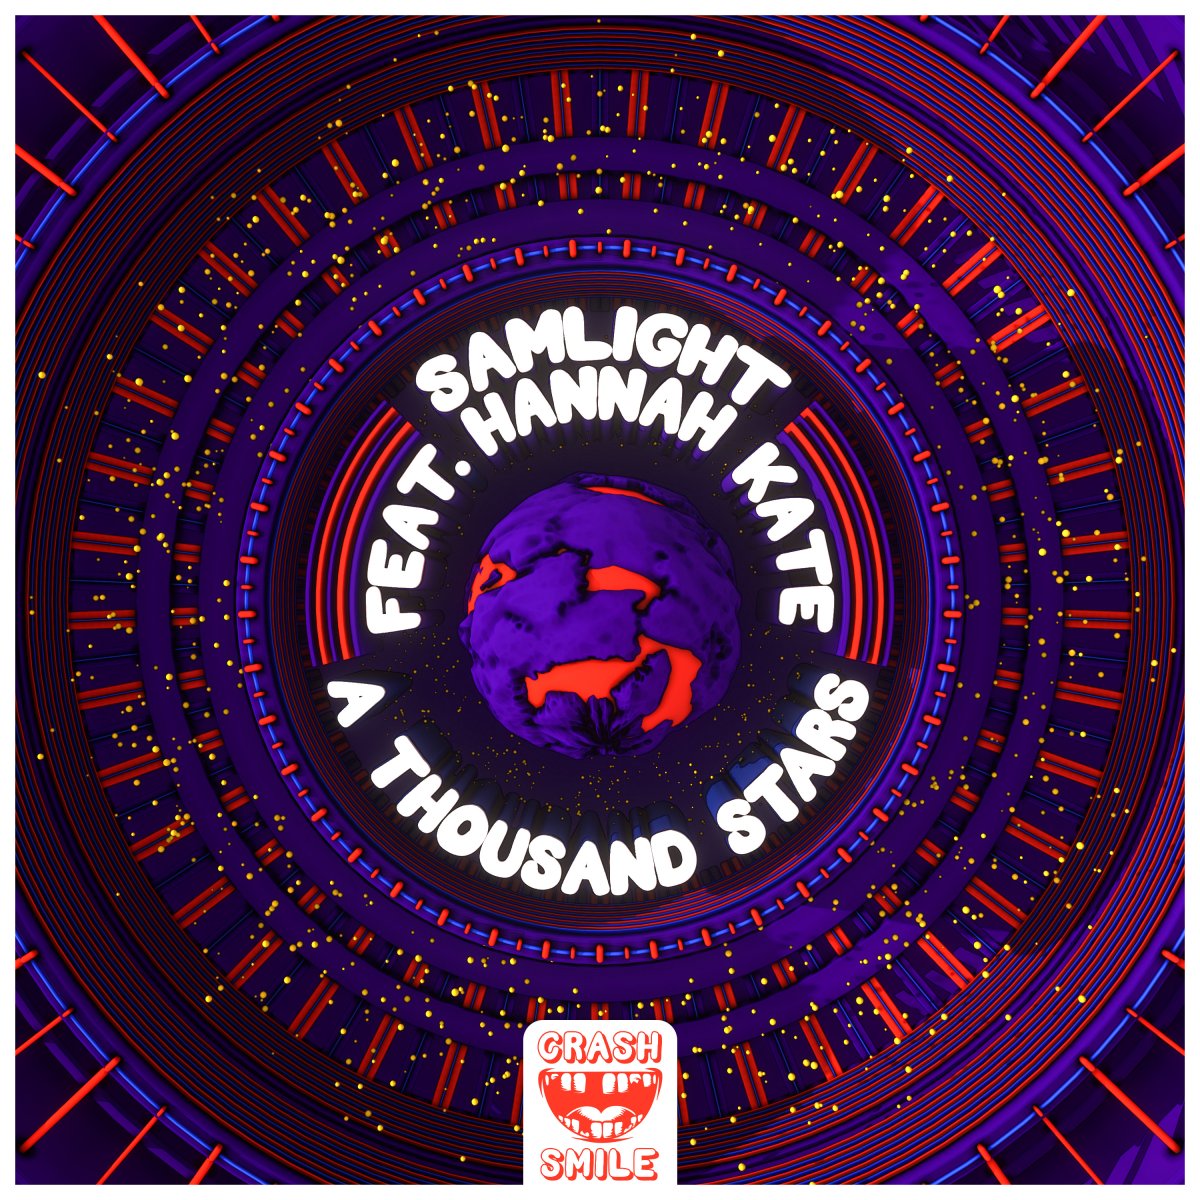  A Thousand Stars - Samlight⁠ feat. hannah kate⁠ 